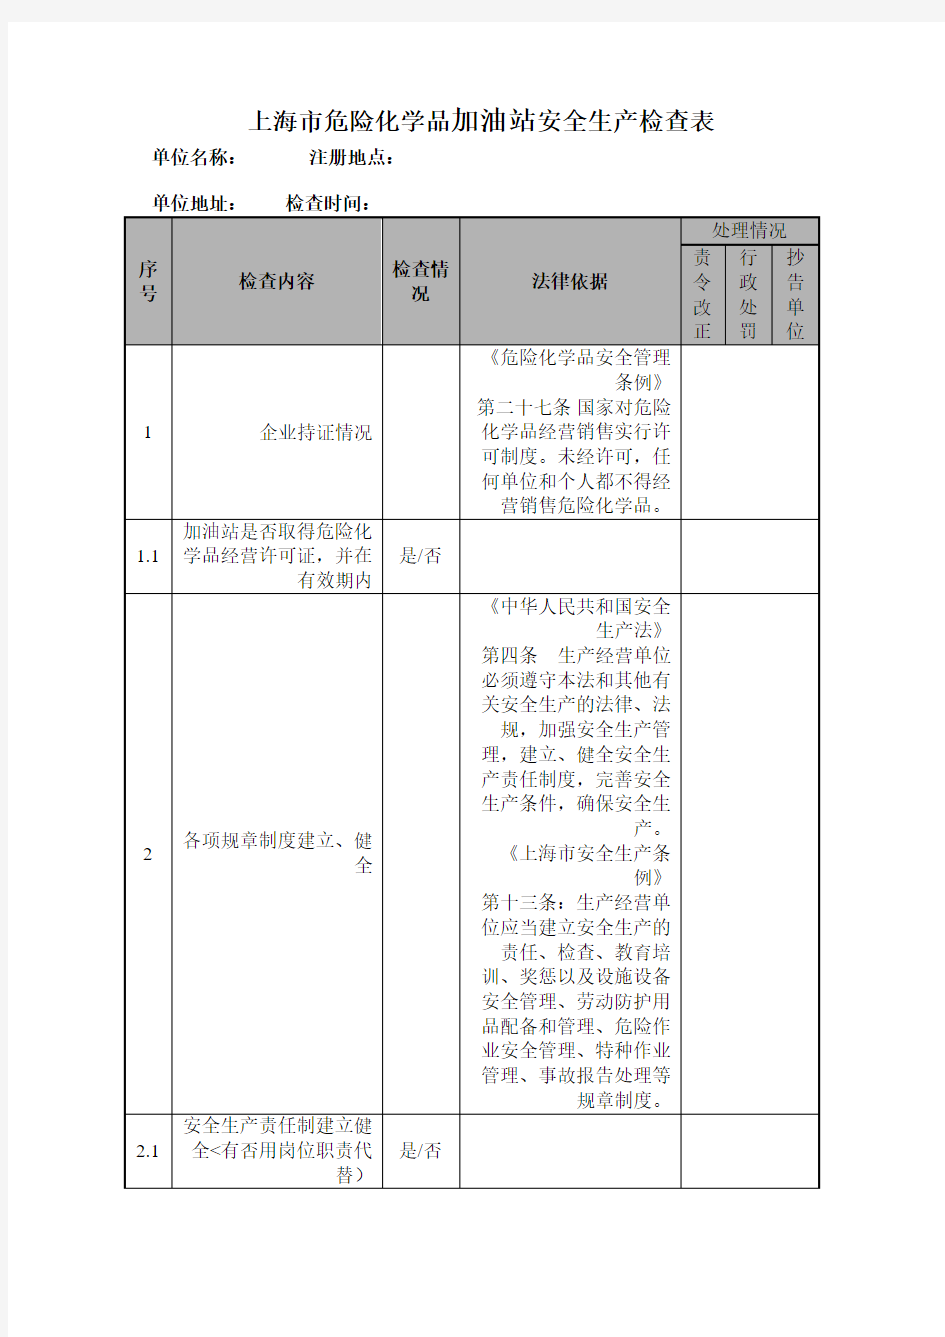 上海危险化学品加油站安全生产检查表